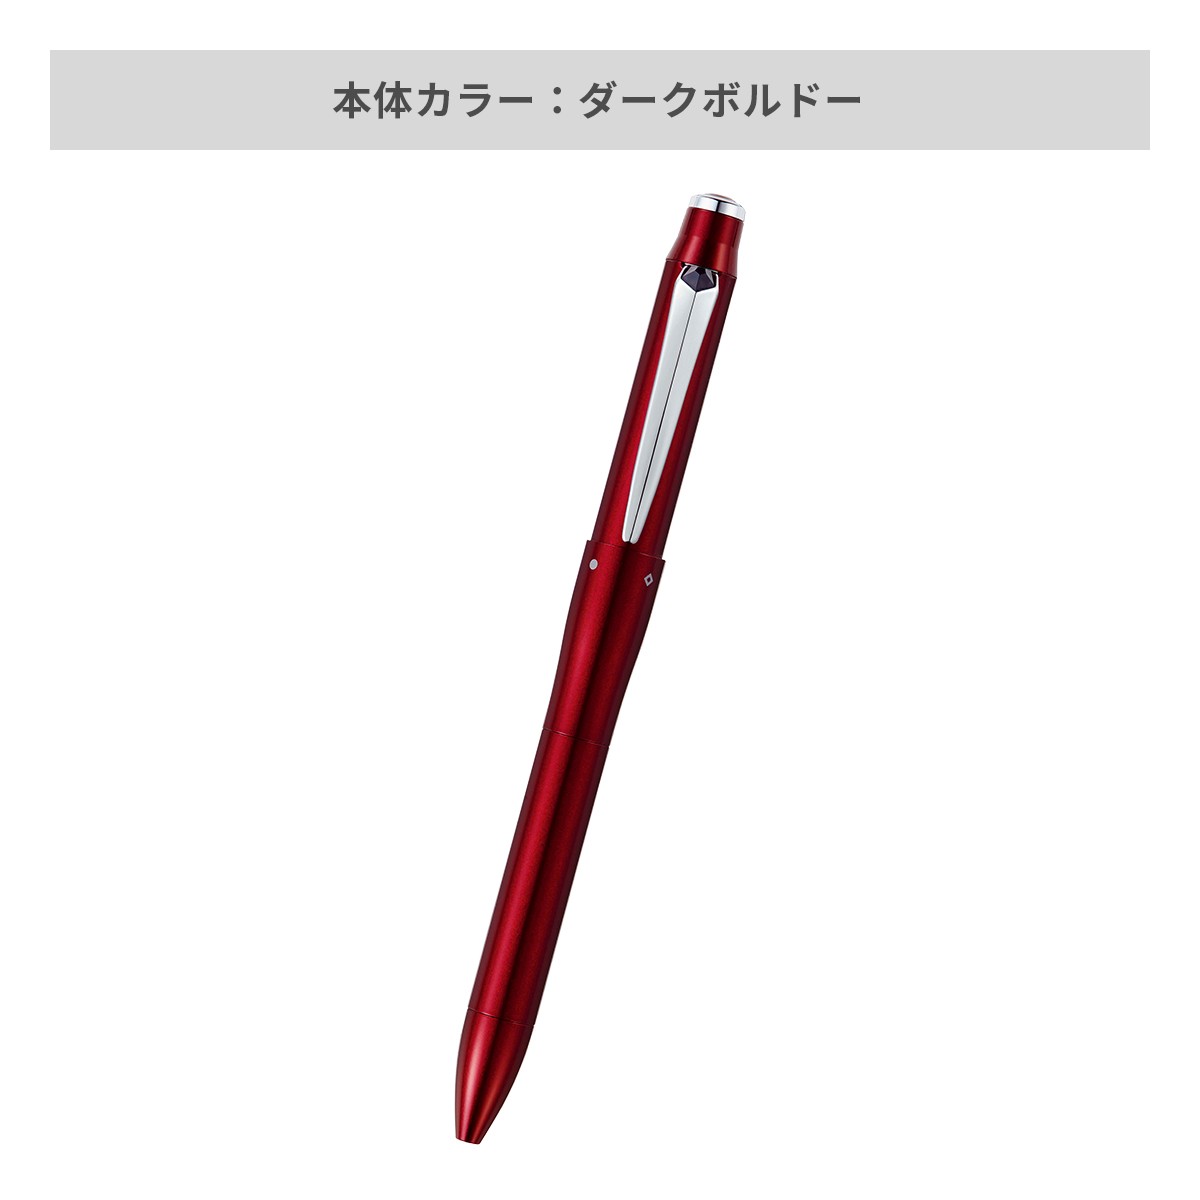 【短納期】三菱鉛筆 ジェットストリーム プライム 多機能ペン 3&1 0.5mm【多機能ペン / レーザー彫刻】 画像4